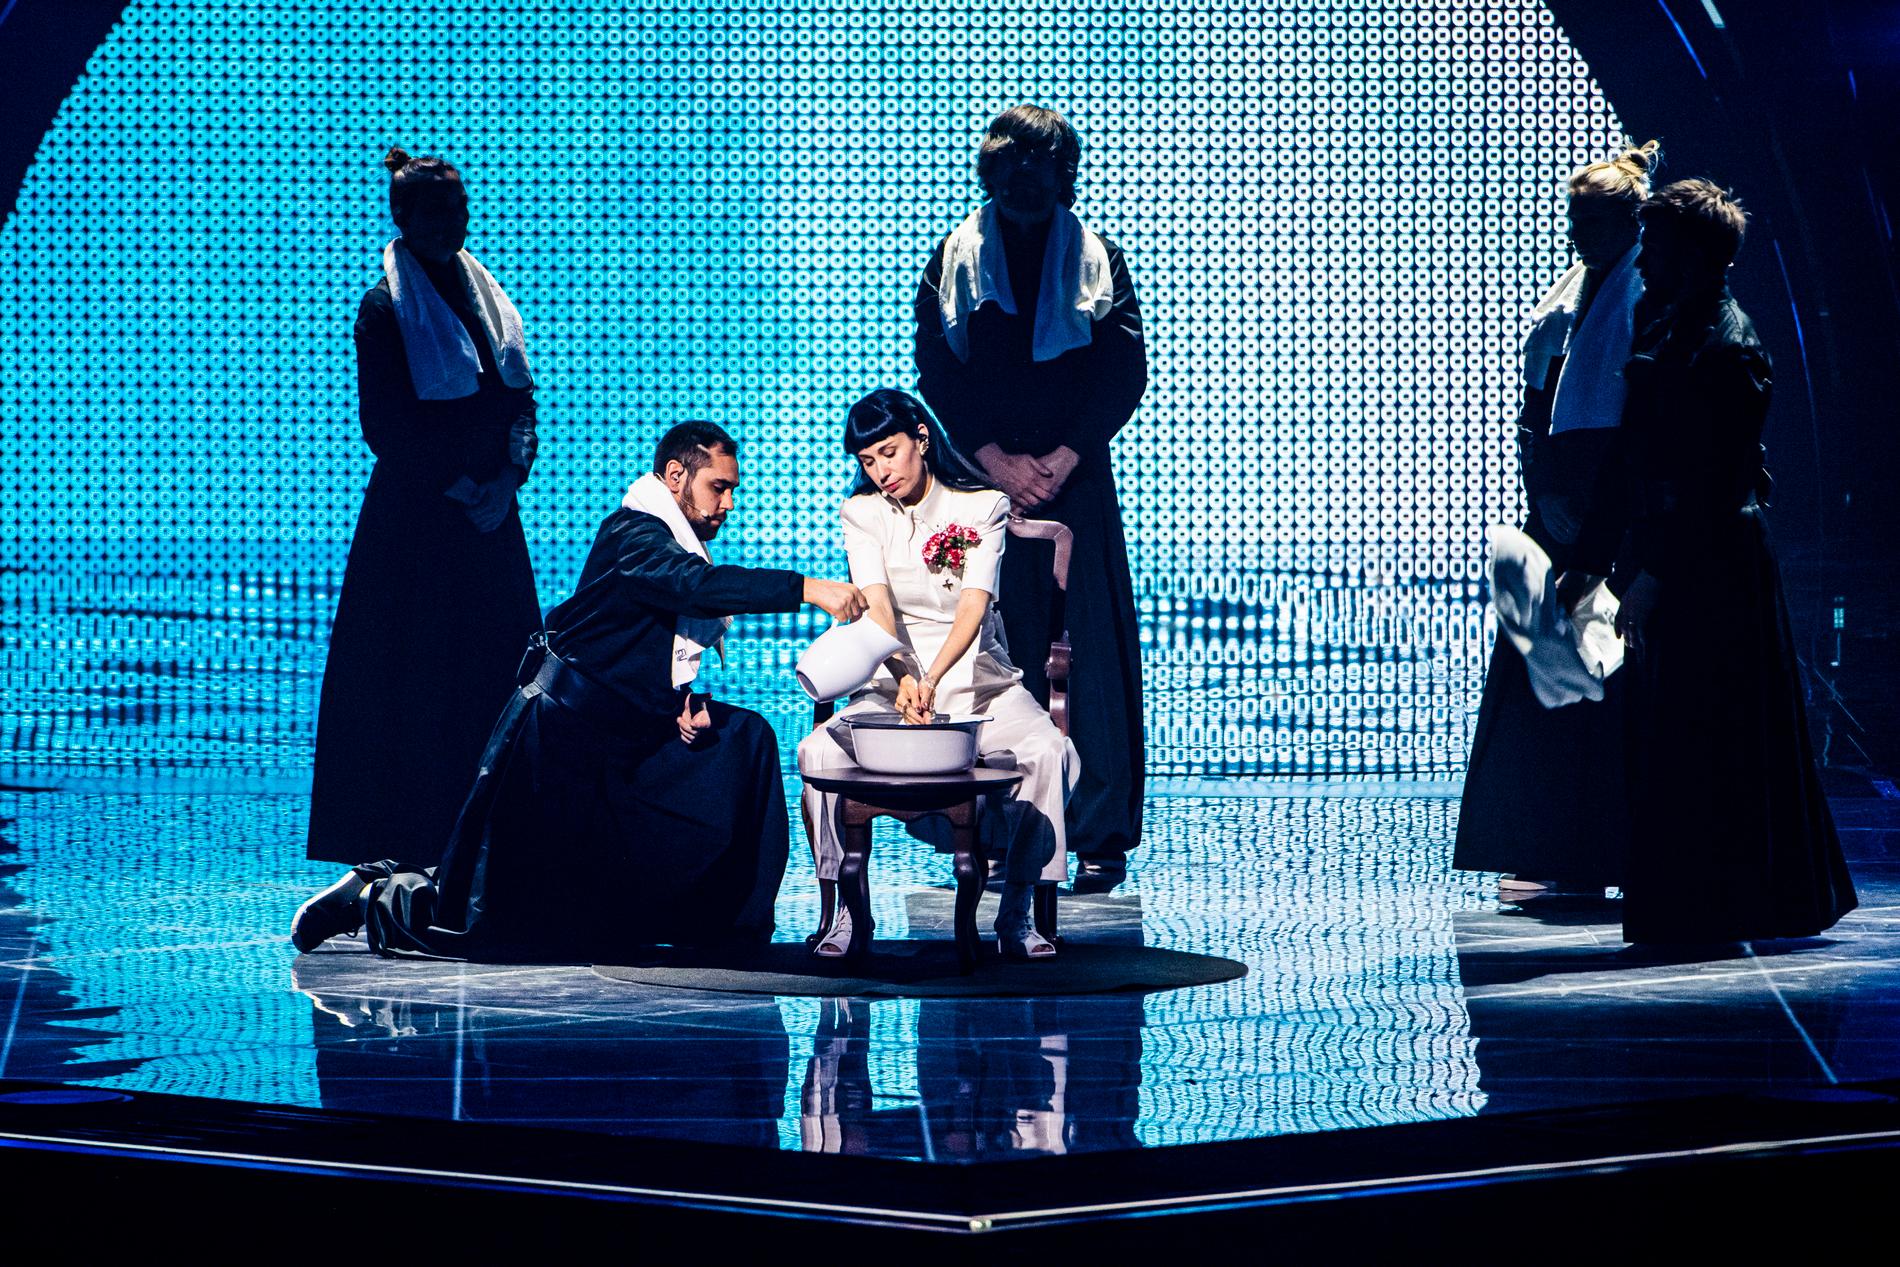 Konstrakta tävlar med låten ”In corpore sano” i Eurovision.